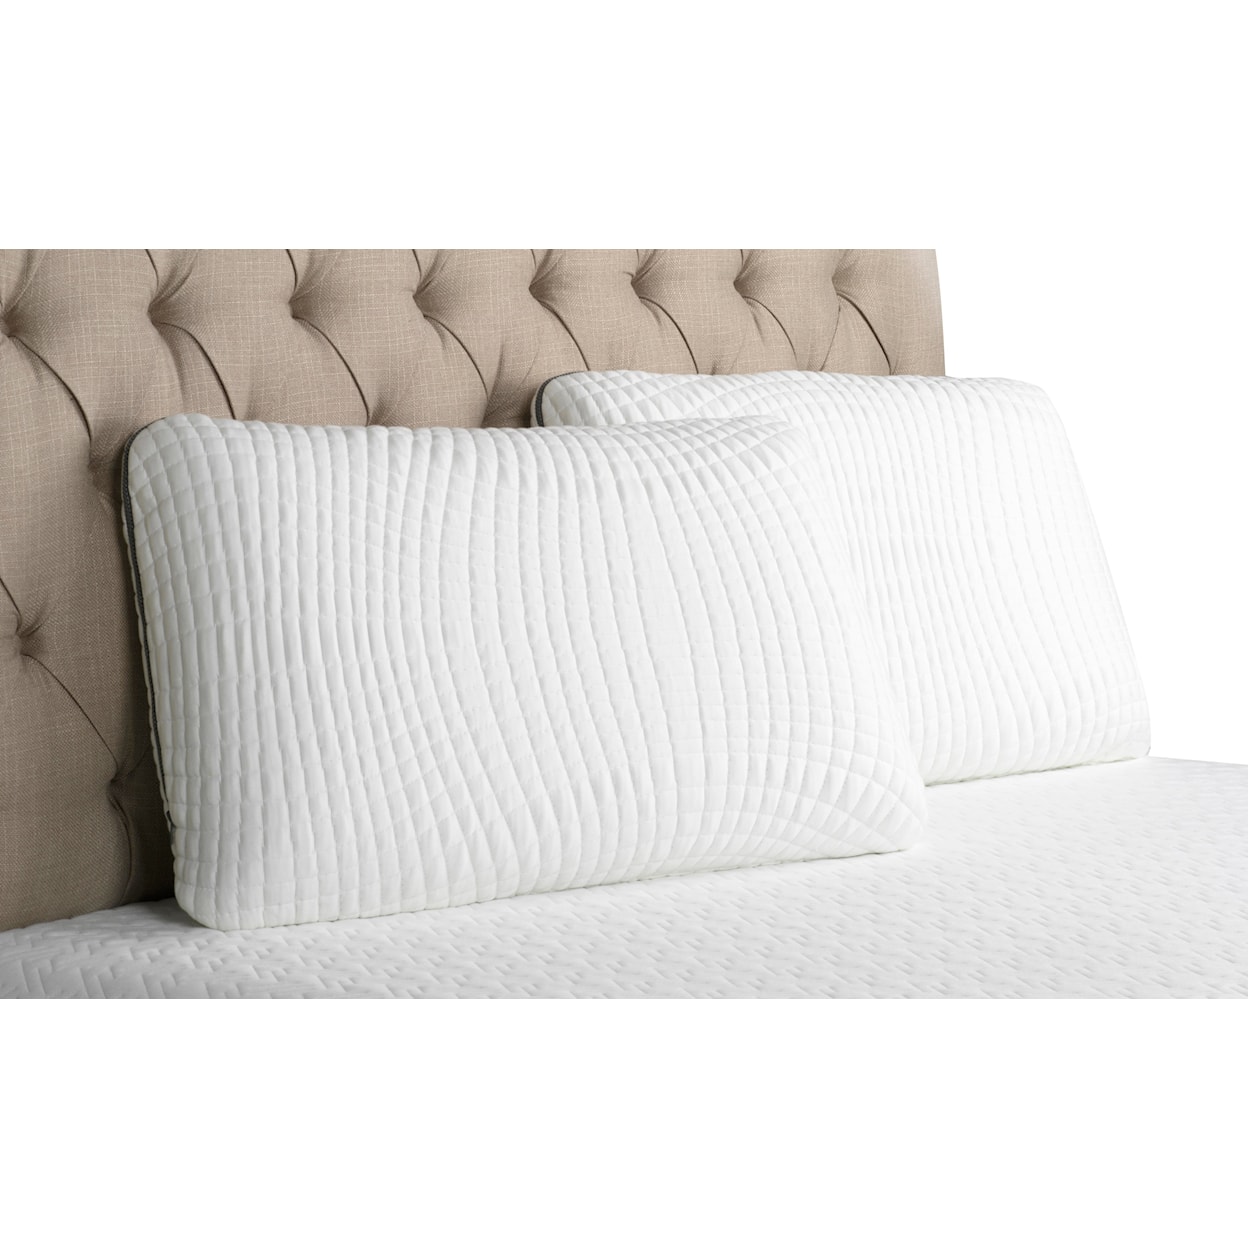 idealSLEEP South Bay International Queen Pillow